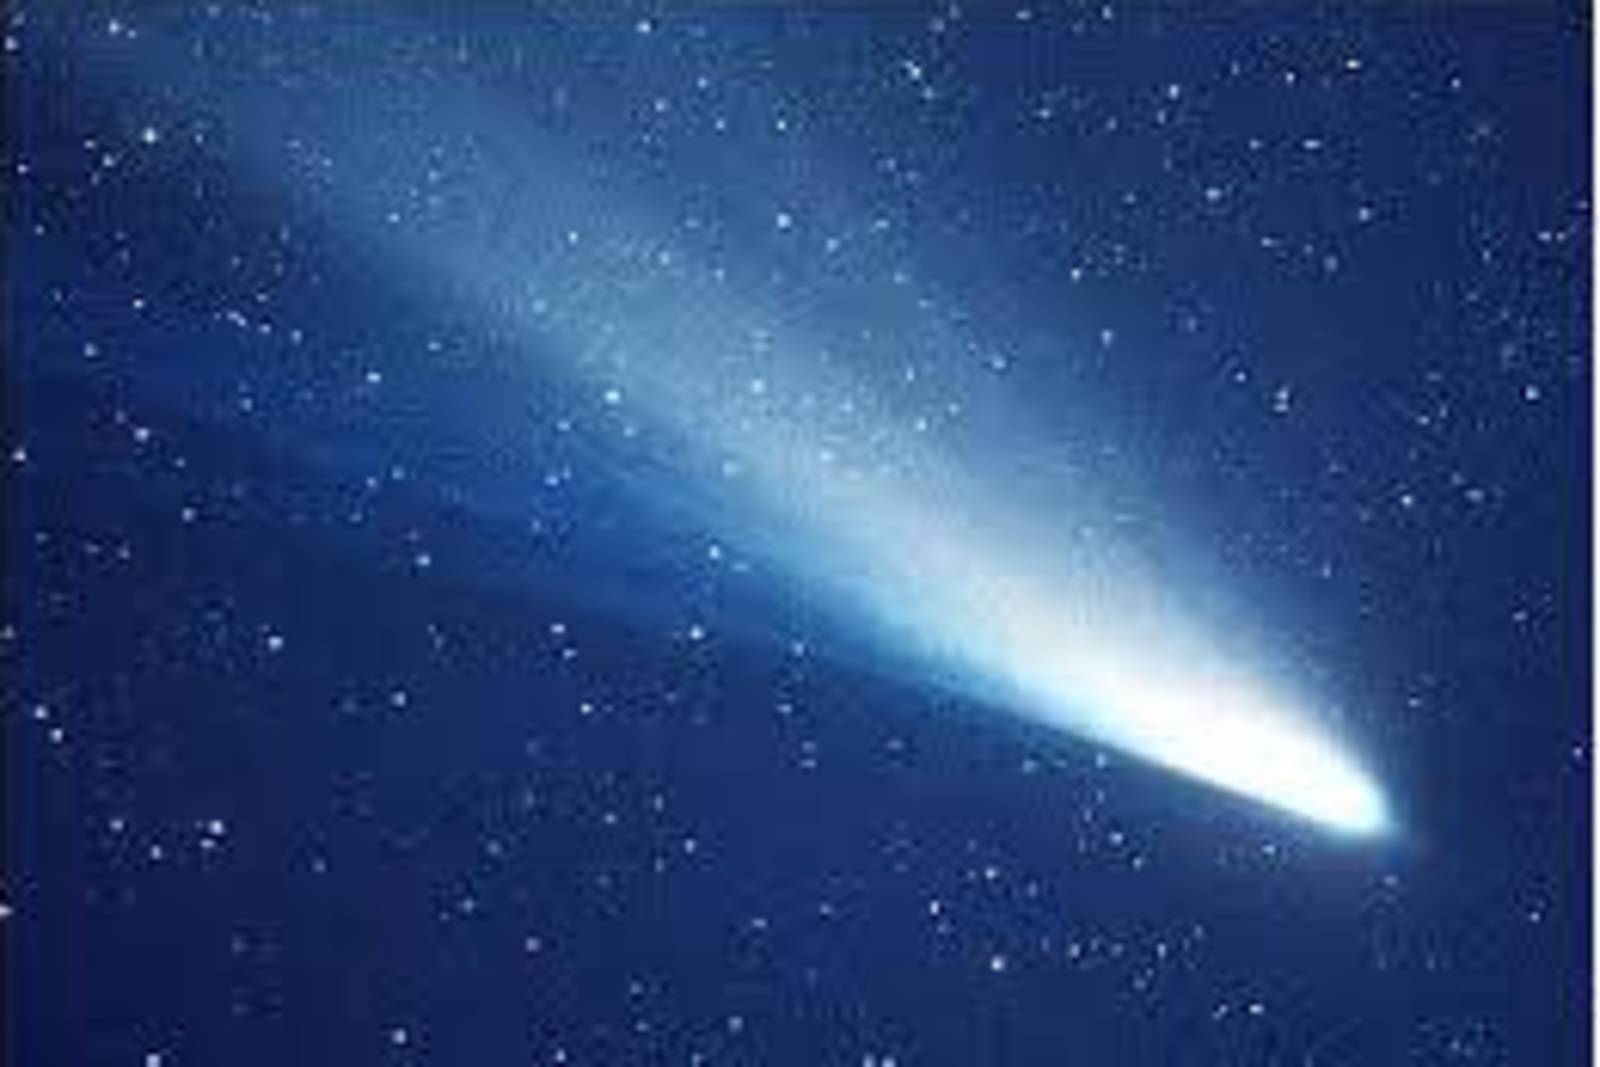 彗星曾經撞地球嗎?